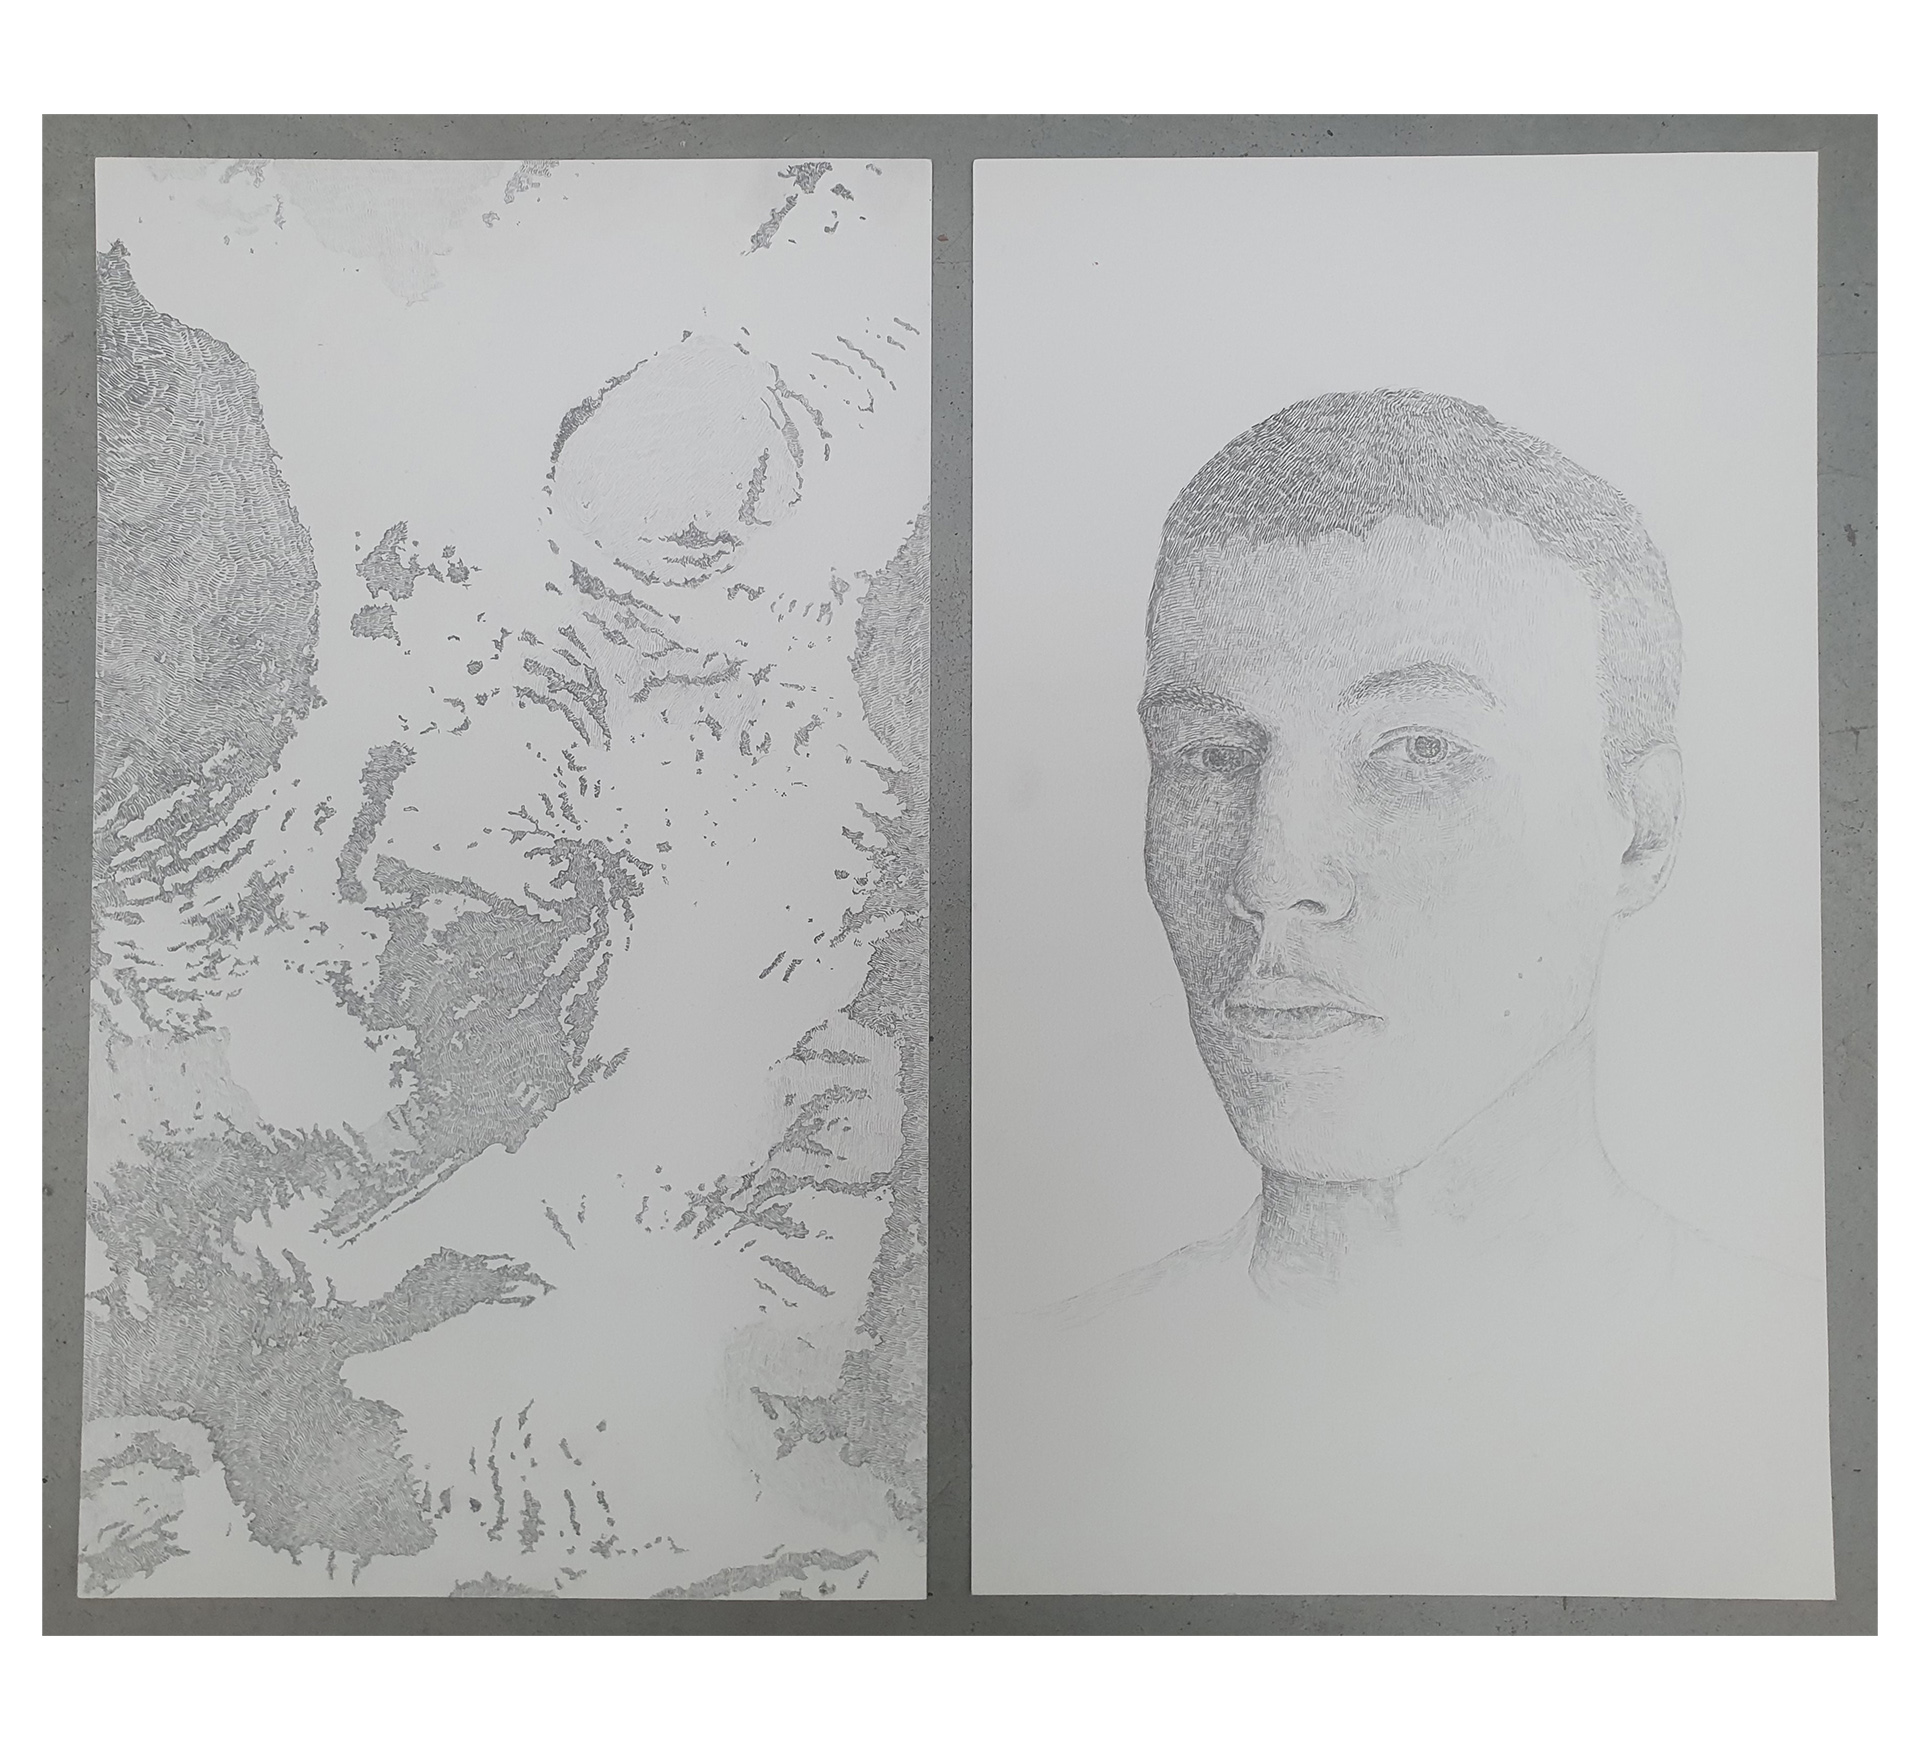 Grafika zawiera dwa delikatne rysunki, na lewej stronie widnieje abstrakcyjny ślad, po prawej autoportret autora - mężczyzna w krótkich włosach.